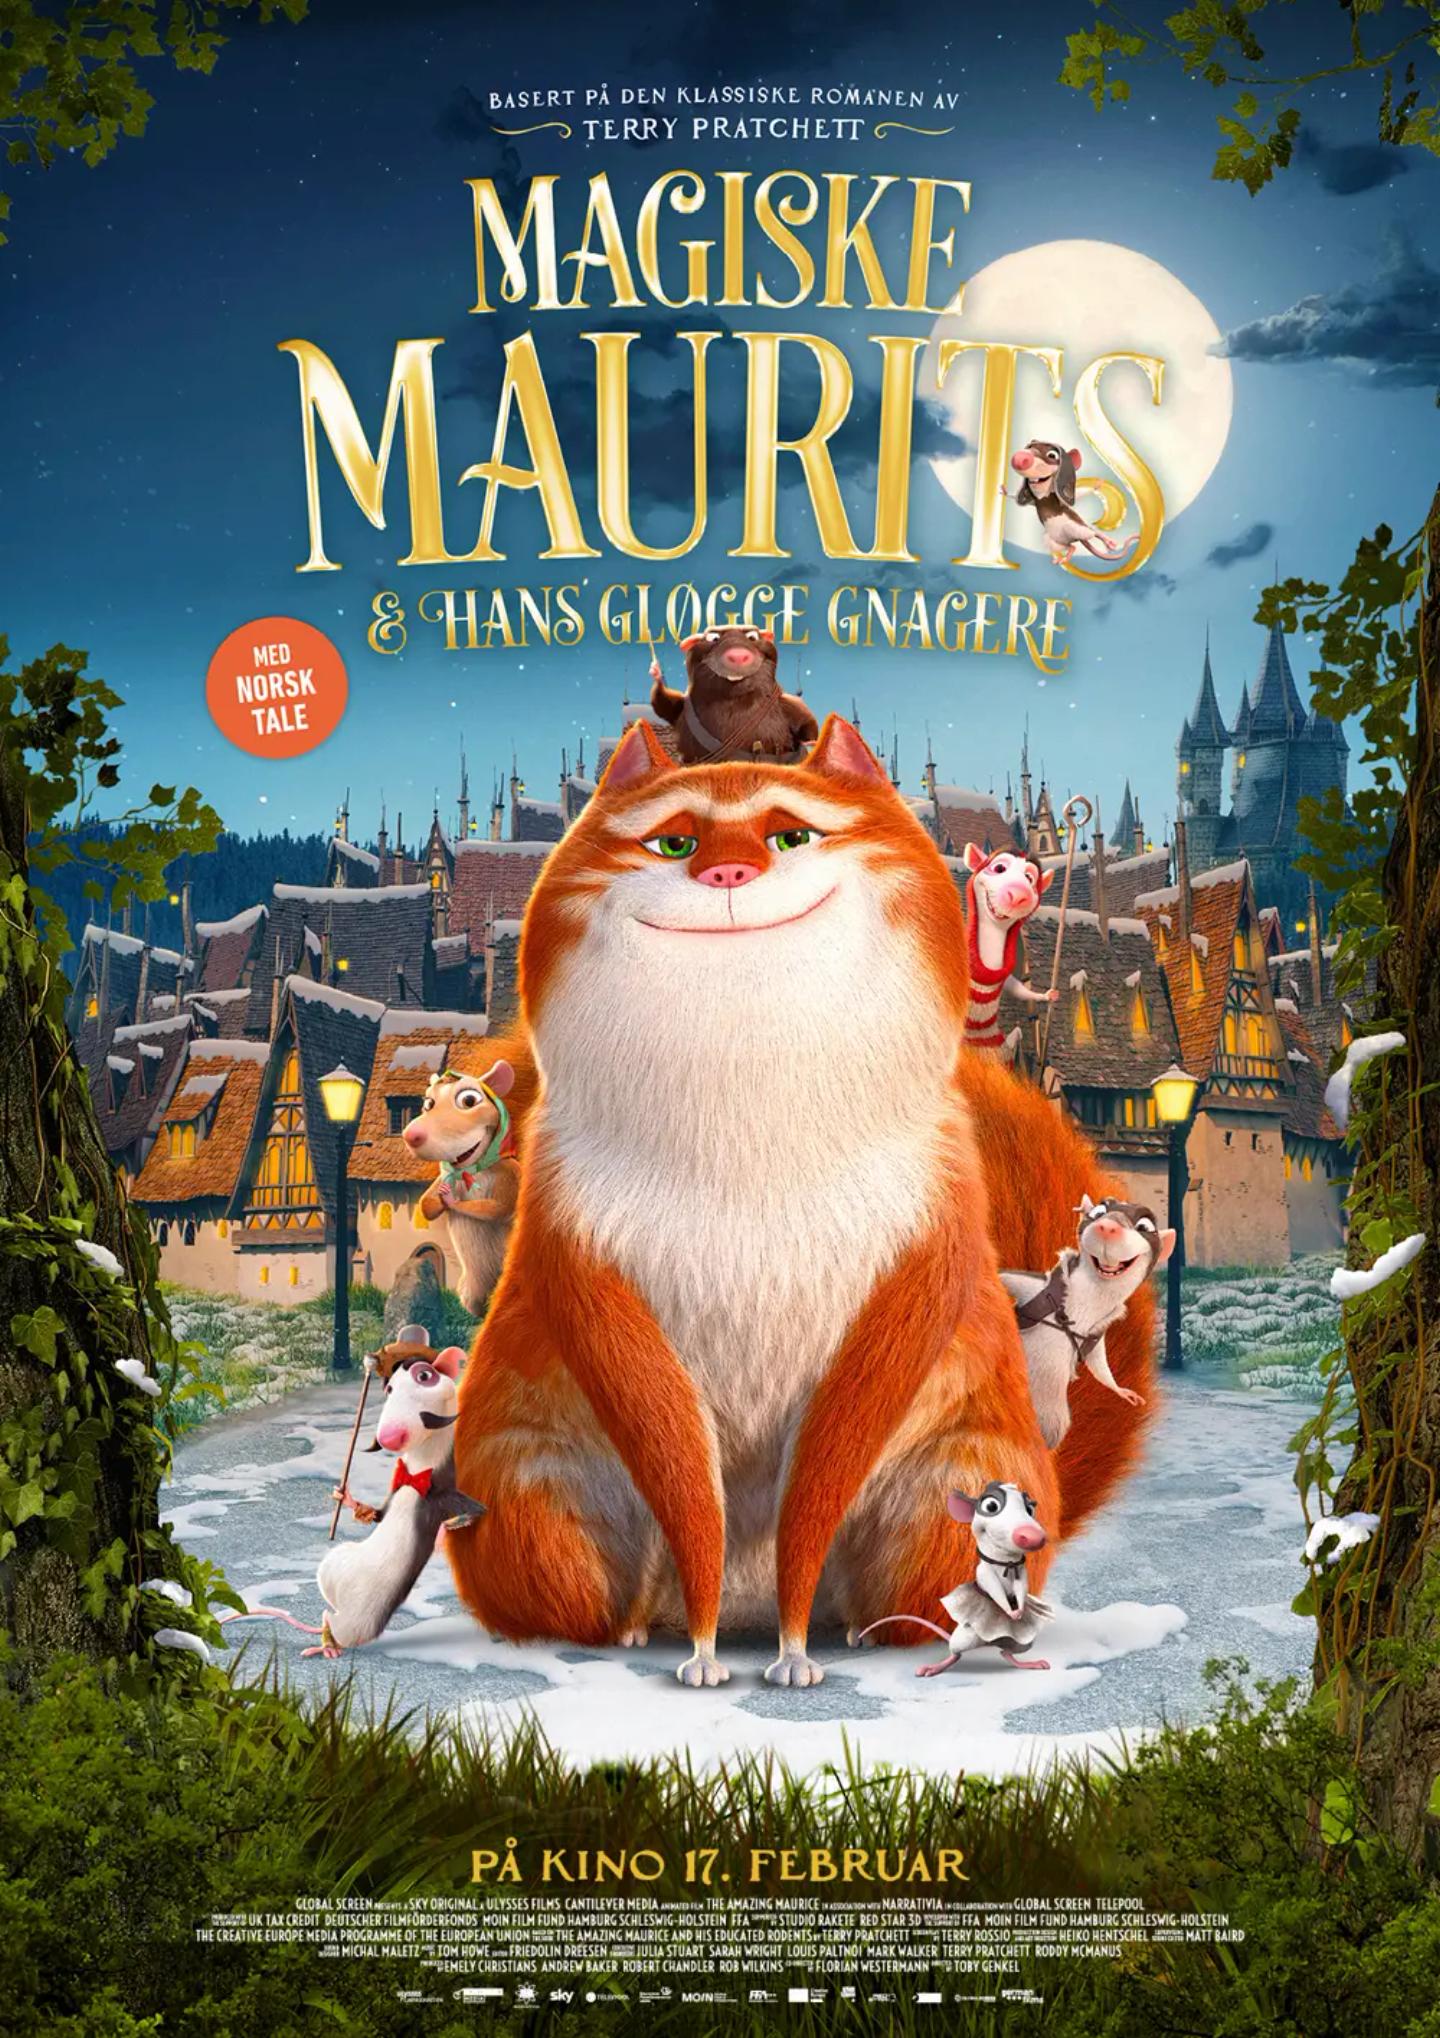 Plakat for 'Magiske Maurits og hans gløgge gnagere'